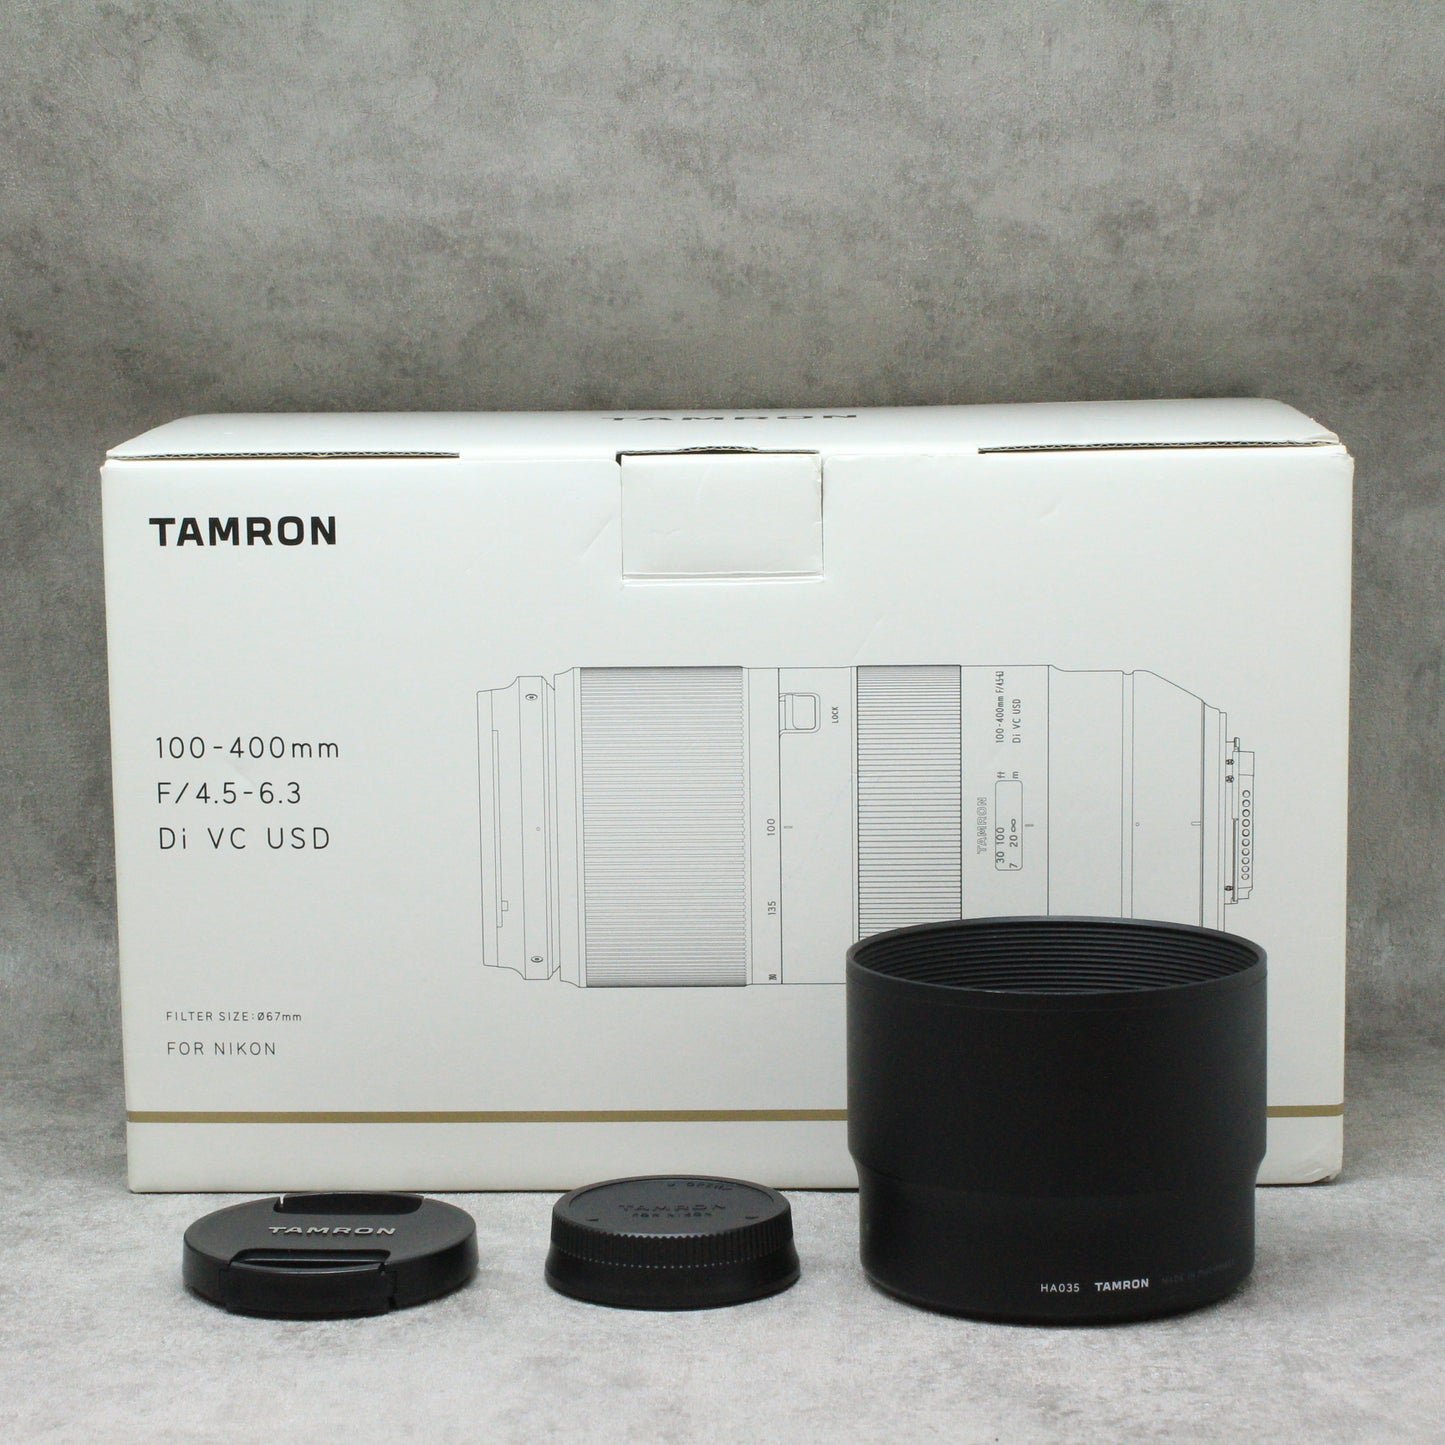 中古品 TAMRON 100-400mm F/4.5-6.3 Di VC USD (Model A035) さんぴん商会